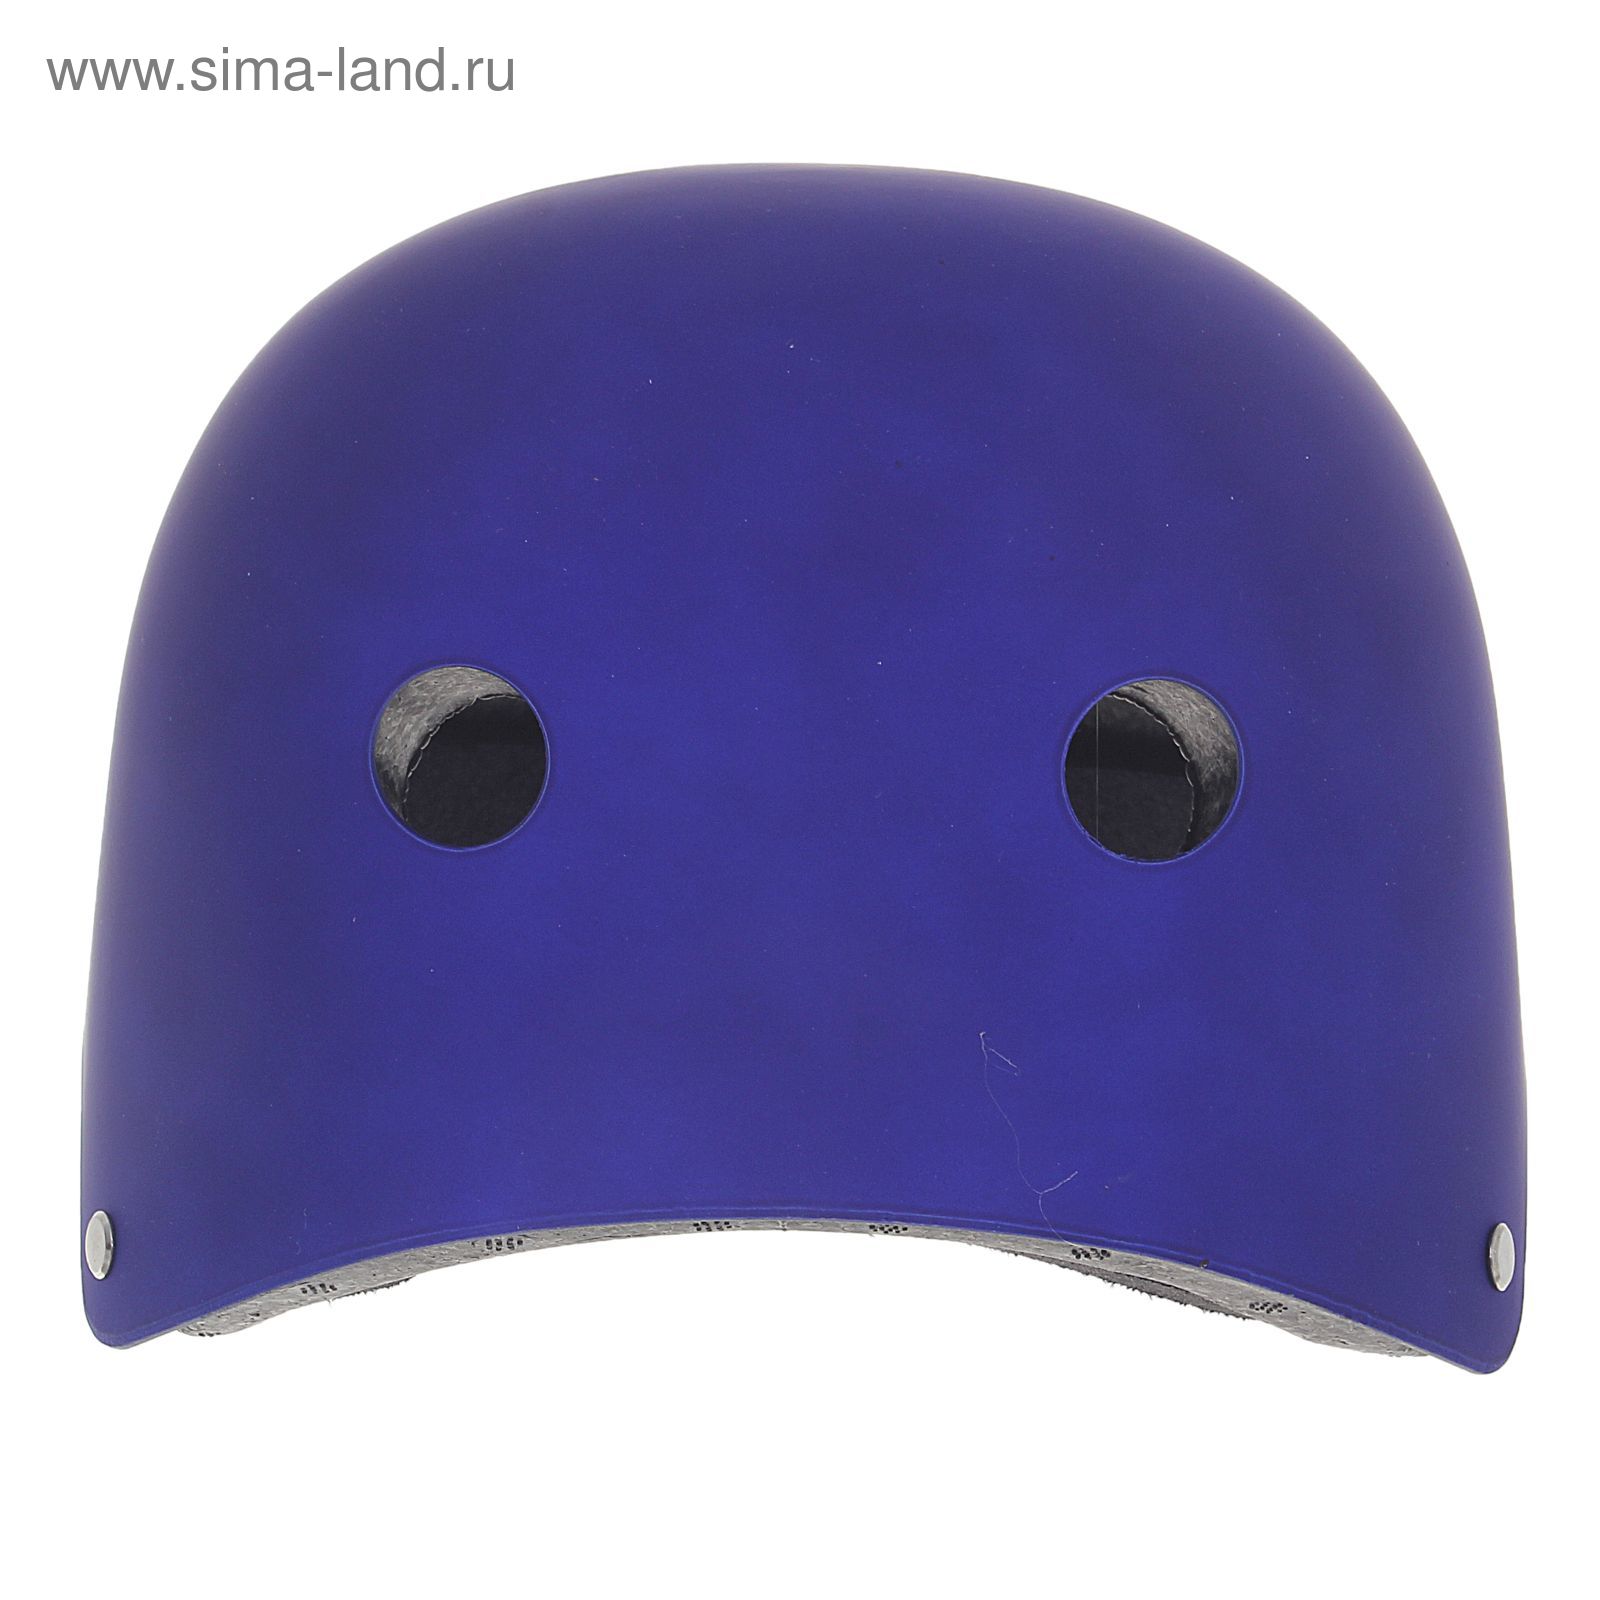 Шлем велосипедиста взрослый ОТ-GK1, матовый, синий d=56 см